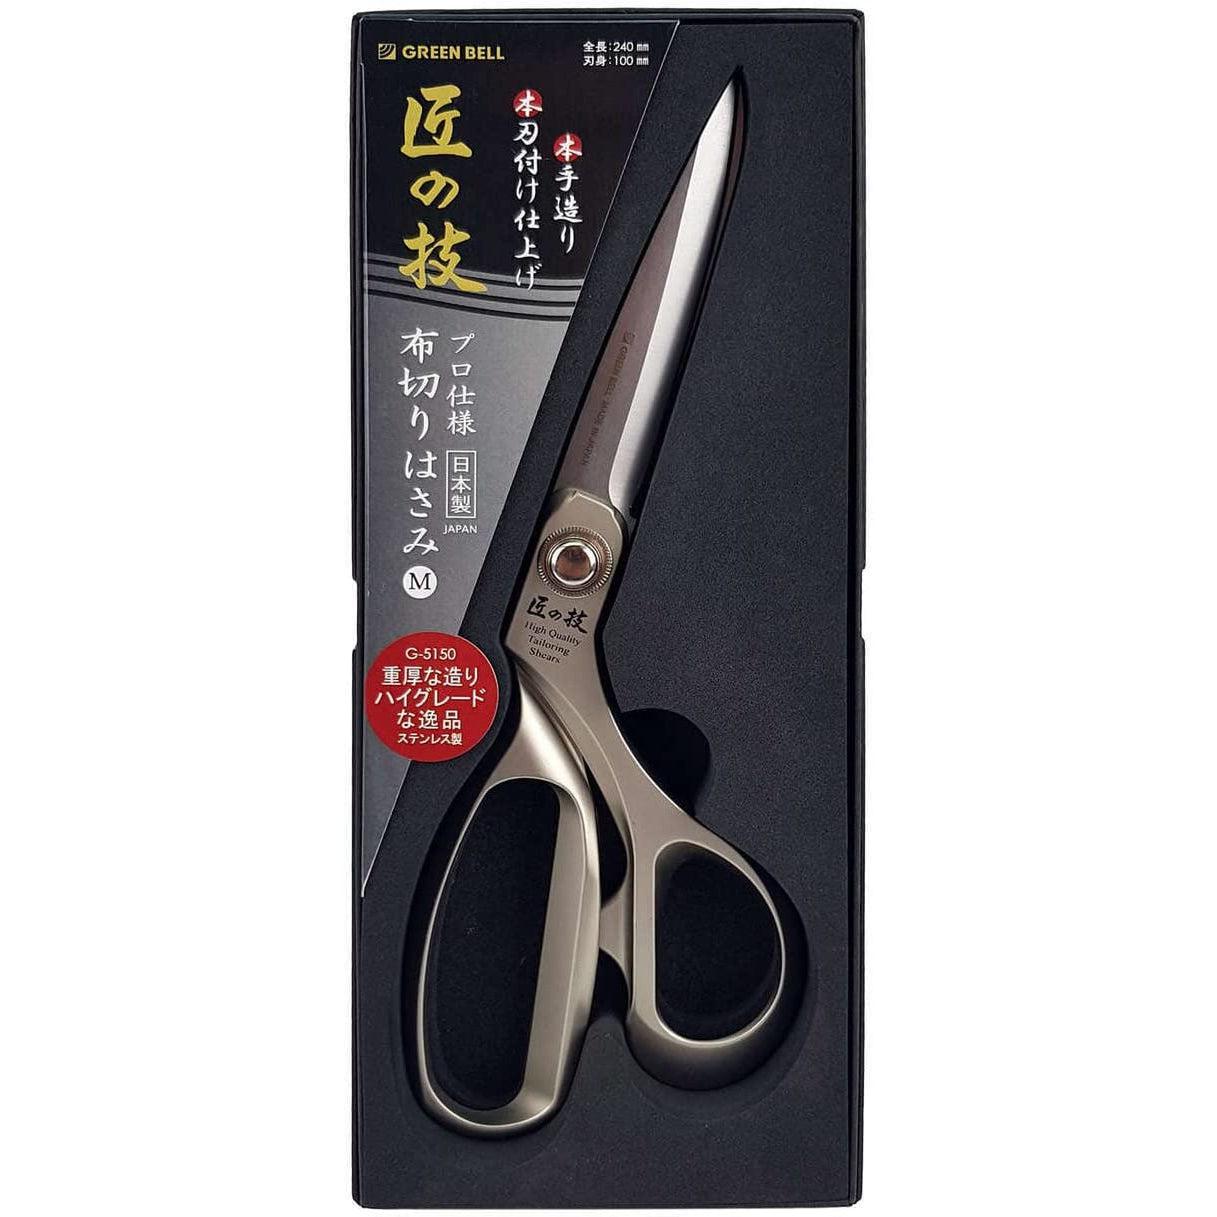 https://int.japanesetaste.com/cdn/shop/products/Green-Bell-Takuminowaza-Artisan-Made-Stainless-Steel-Tailoring-Shears-Japanese-Taste.jpg?v=1691030159&width=5760